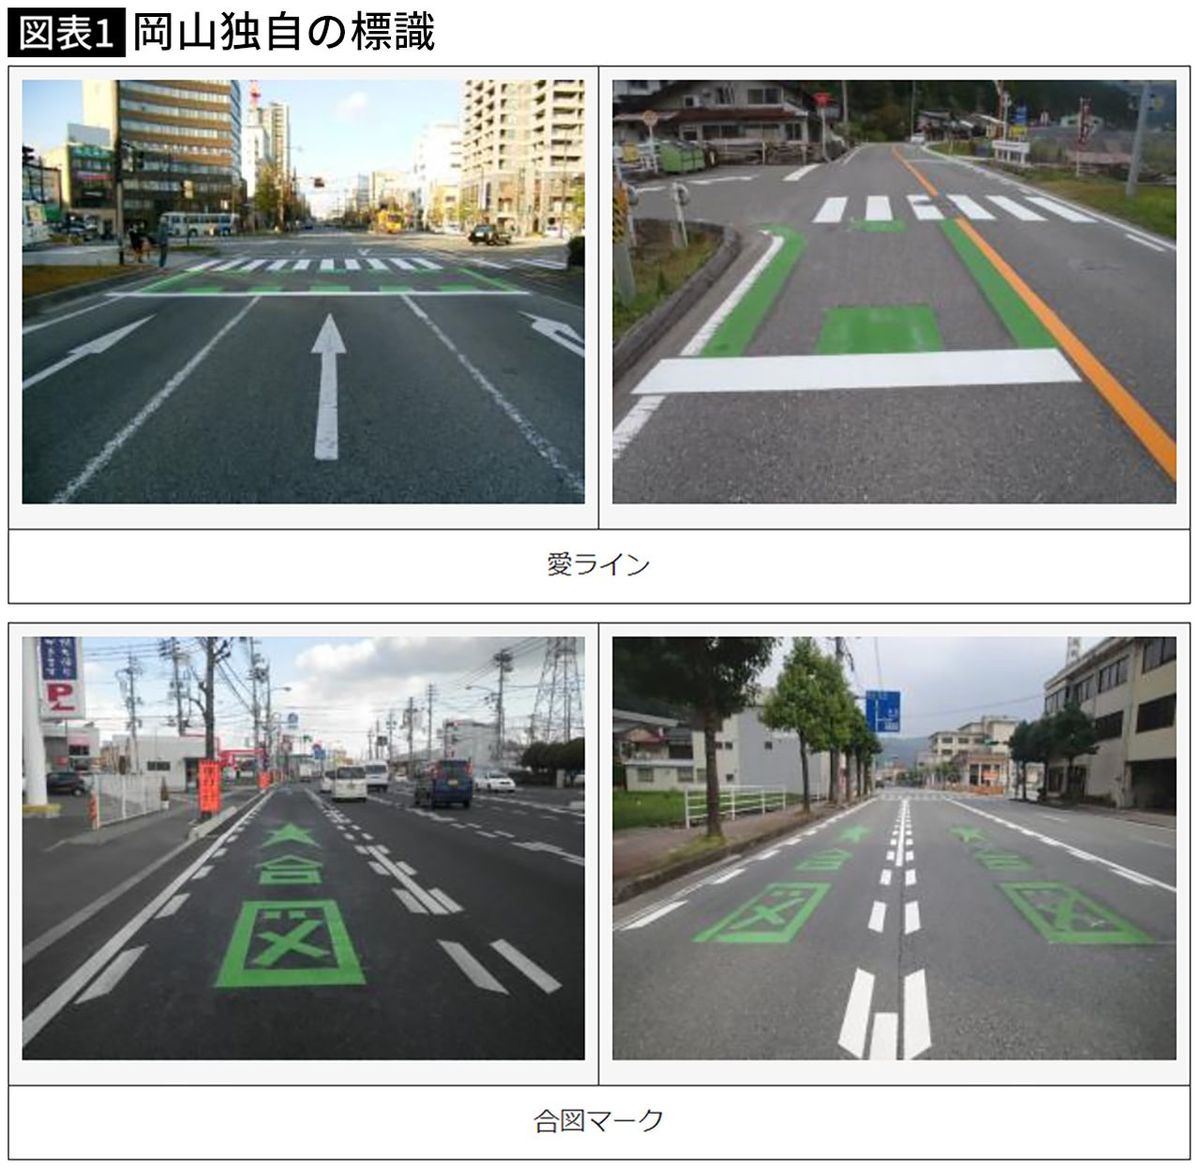 岡山県「道路標識と道路標示」より